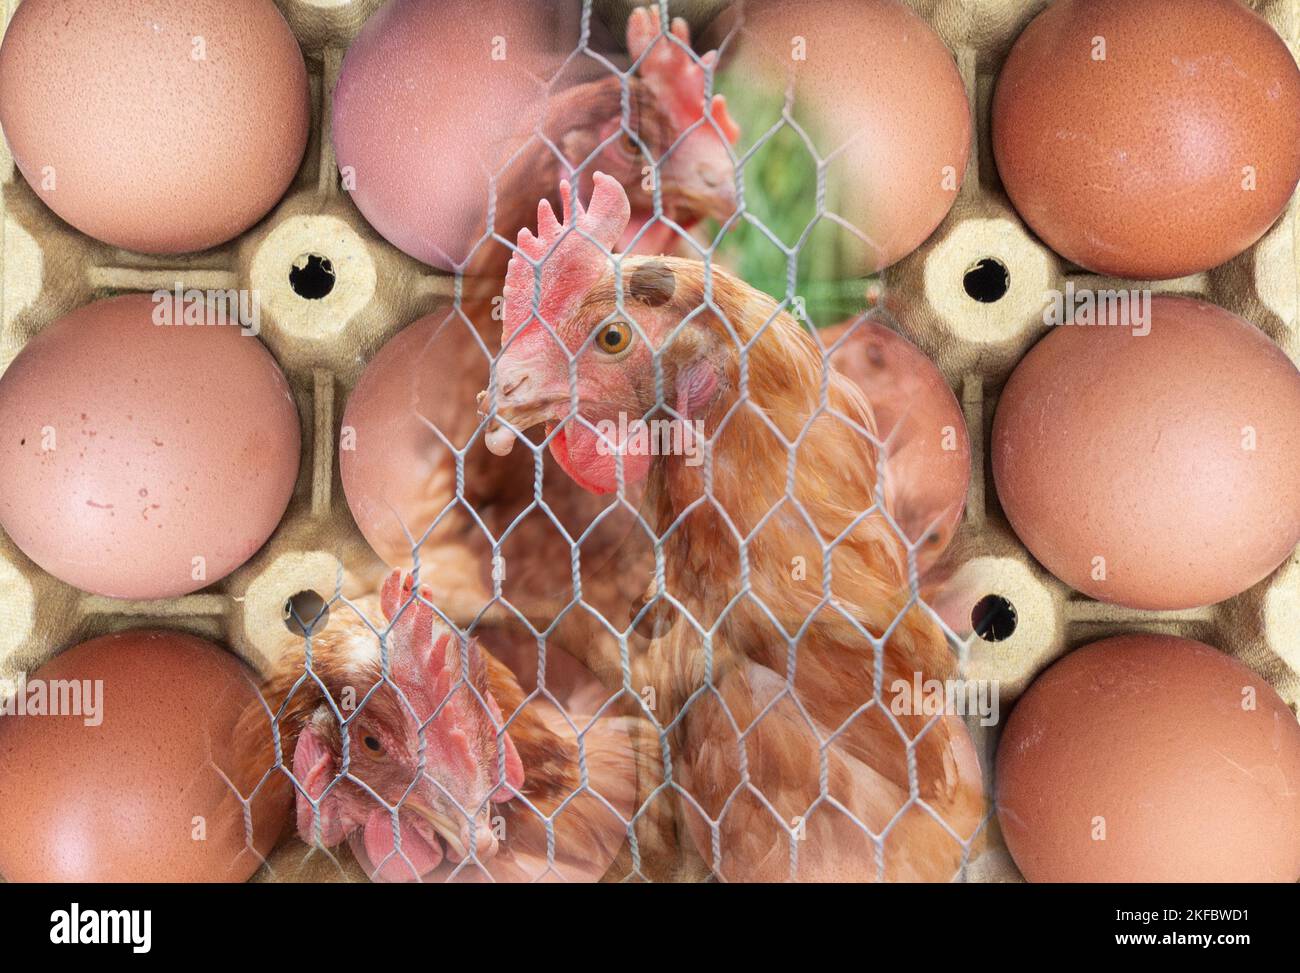 Carenza di uova, aumento dei prezzi delle uova, inflazione, costo della crisi, influenza aviaria, influenza aviaria... concetto Foto Stock